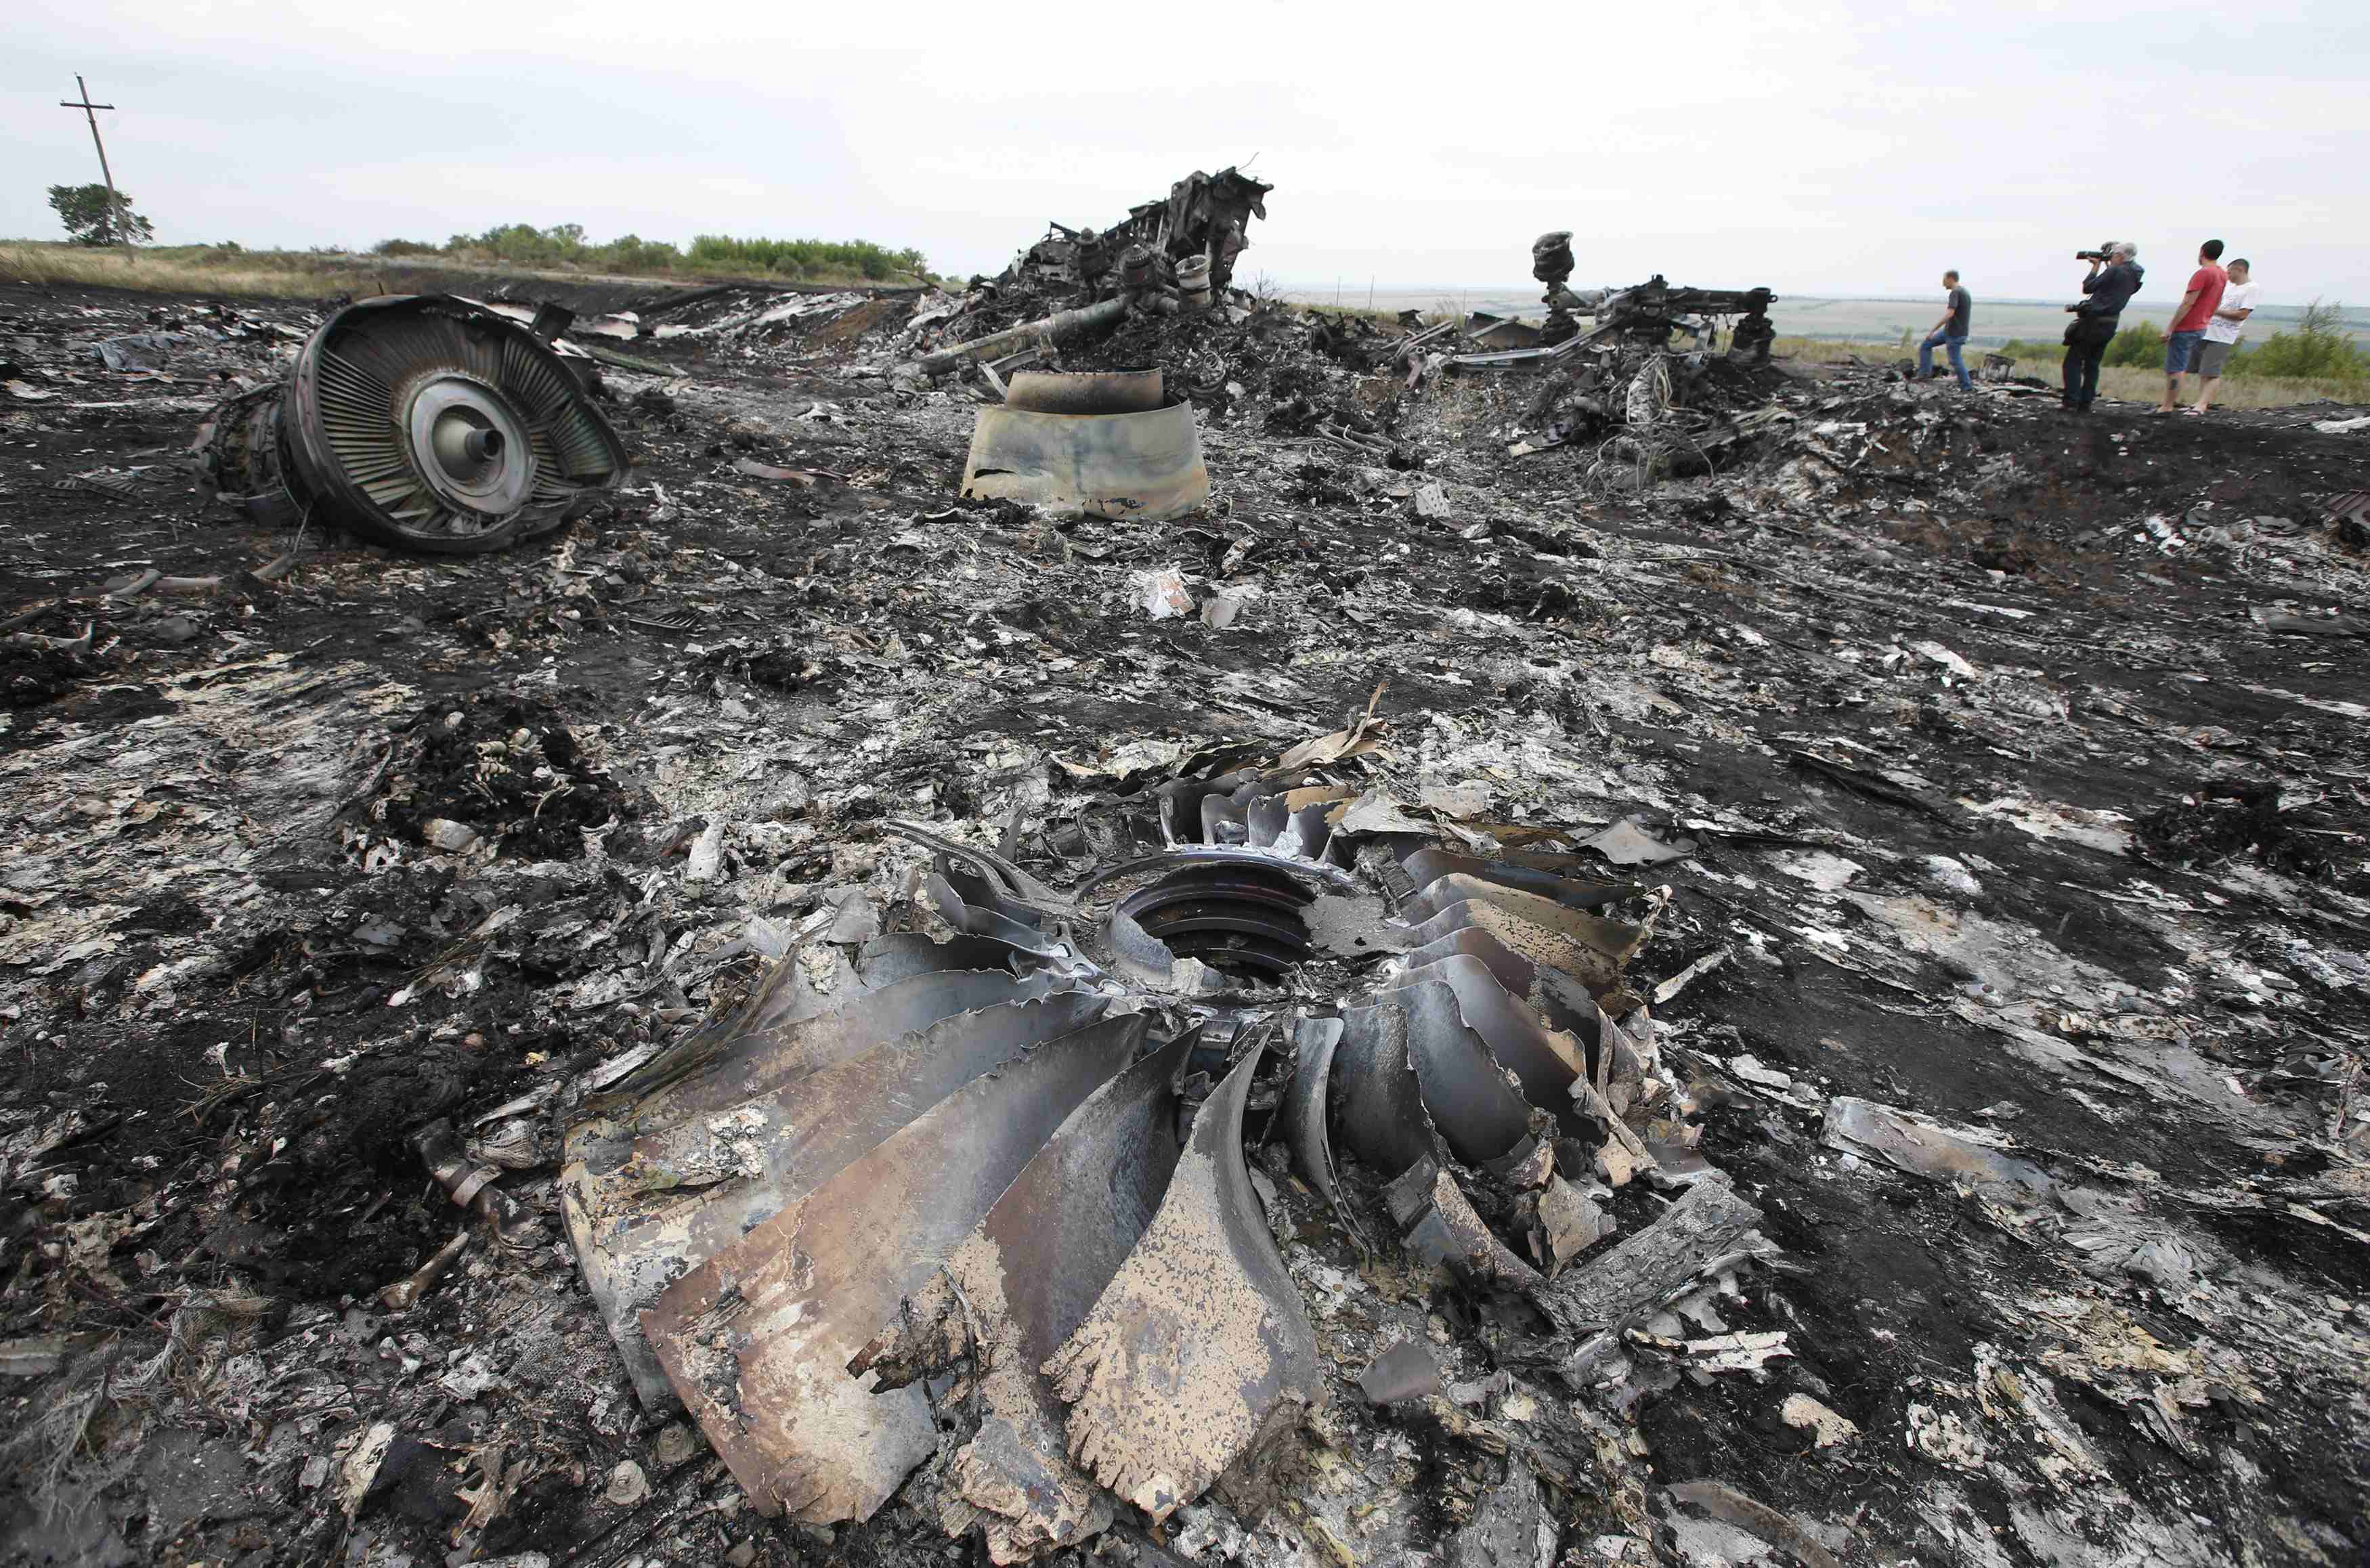 Ηχητικό ντοκουμέντο! «Μόλις καταρρίψαμε ένα αεροπλάνο» – Φιλορώσοι διοικητές περιγράφουν πως “έριξαν” το αεροπλάνο της Malaysian Airlines!